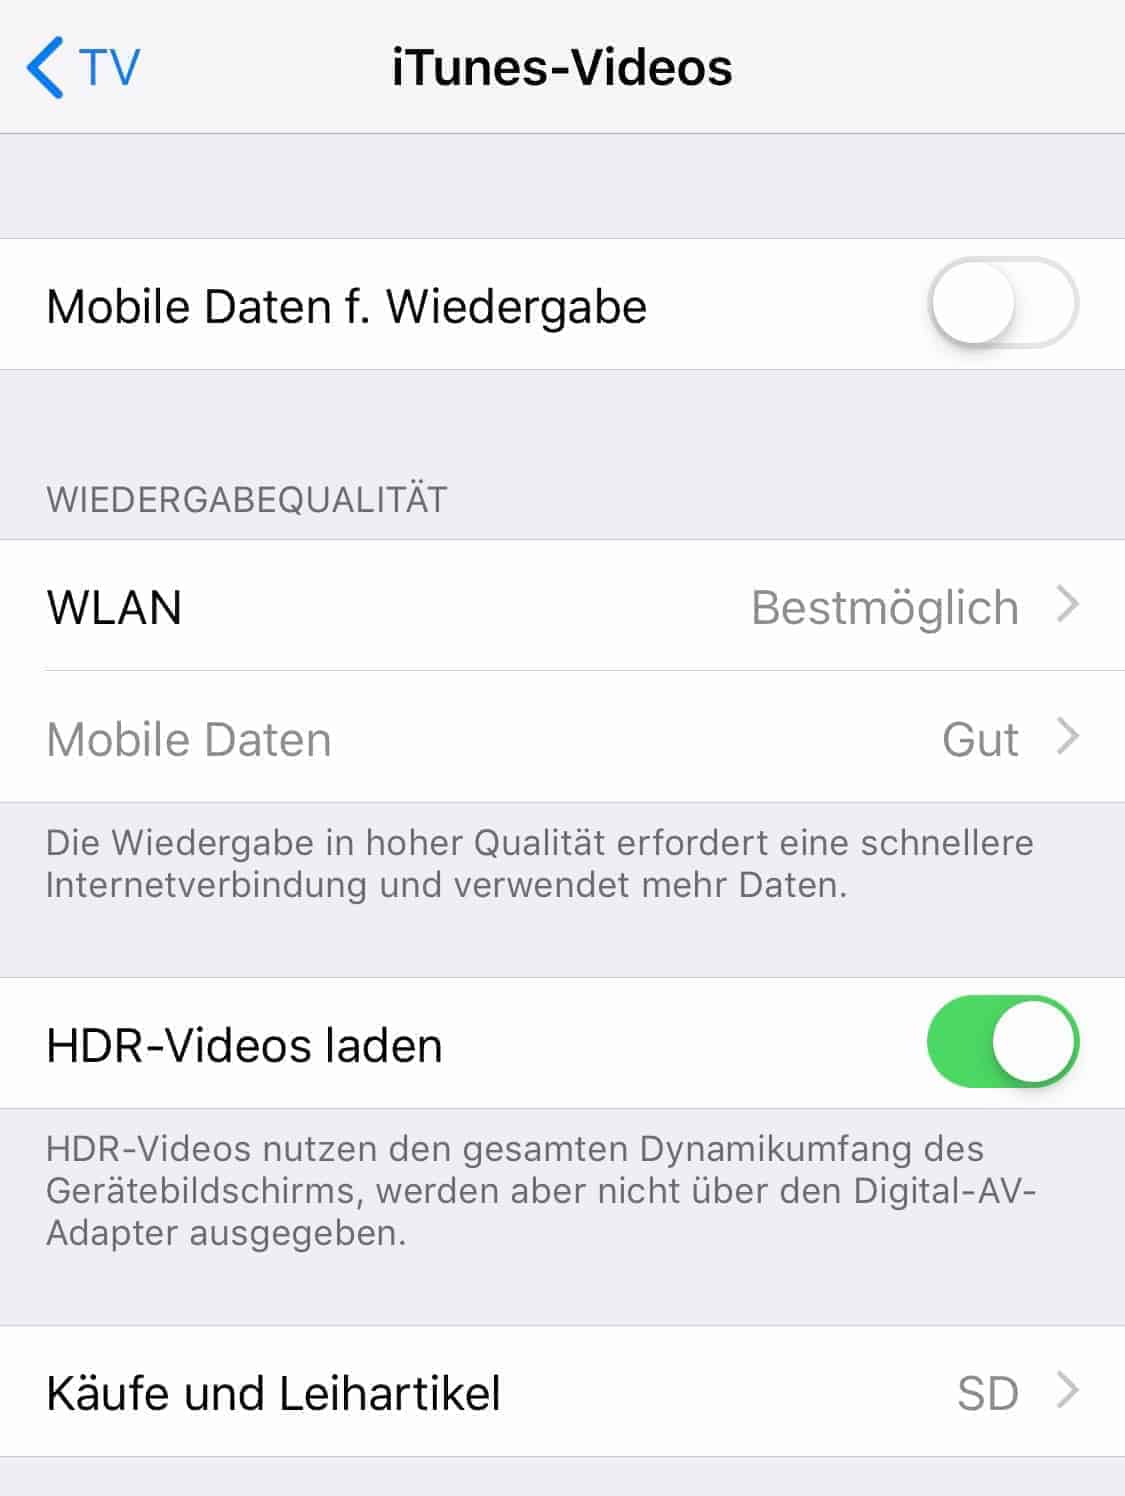 Roaming_iOS_iTunes-Videos_Mobile_Daten_Wiedergabe_und_Mobile_Daten